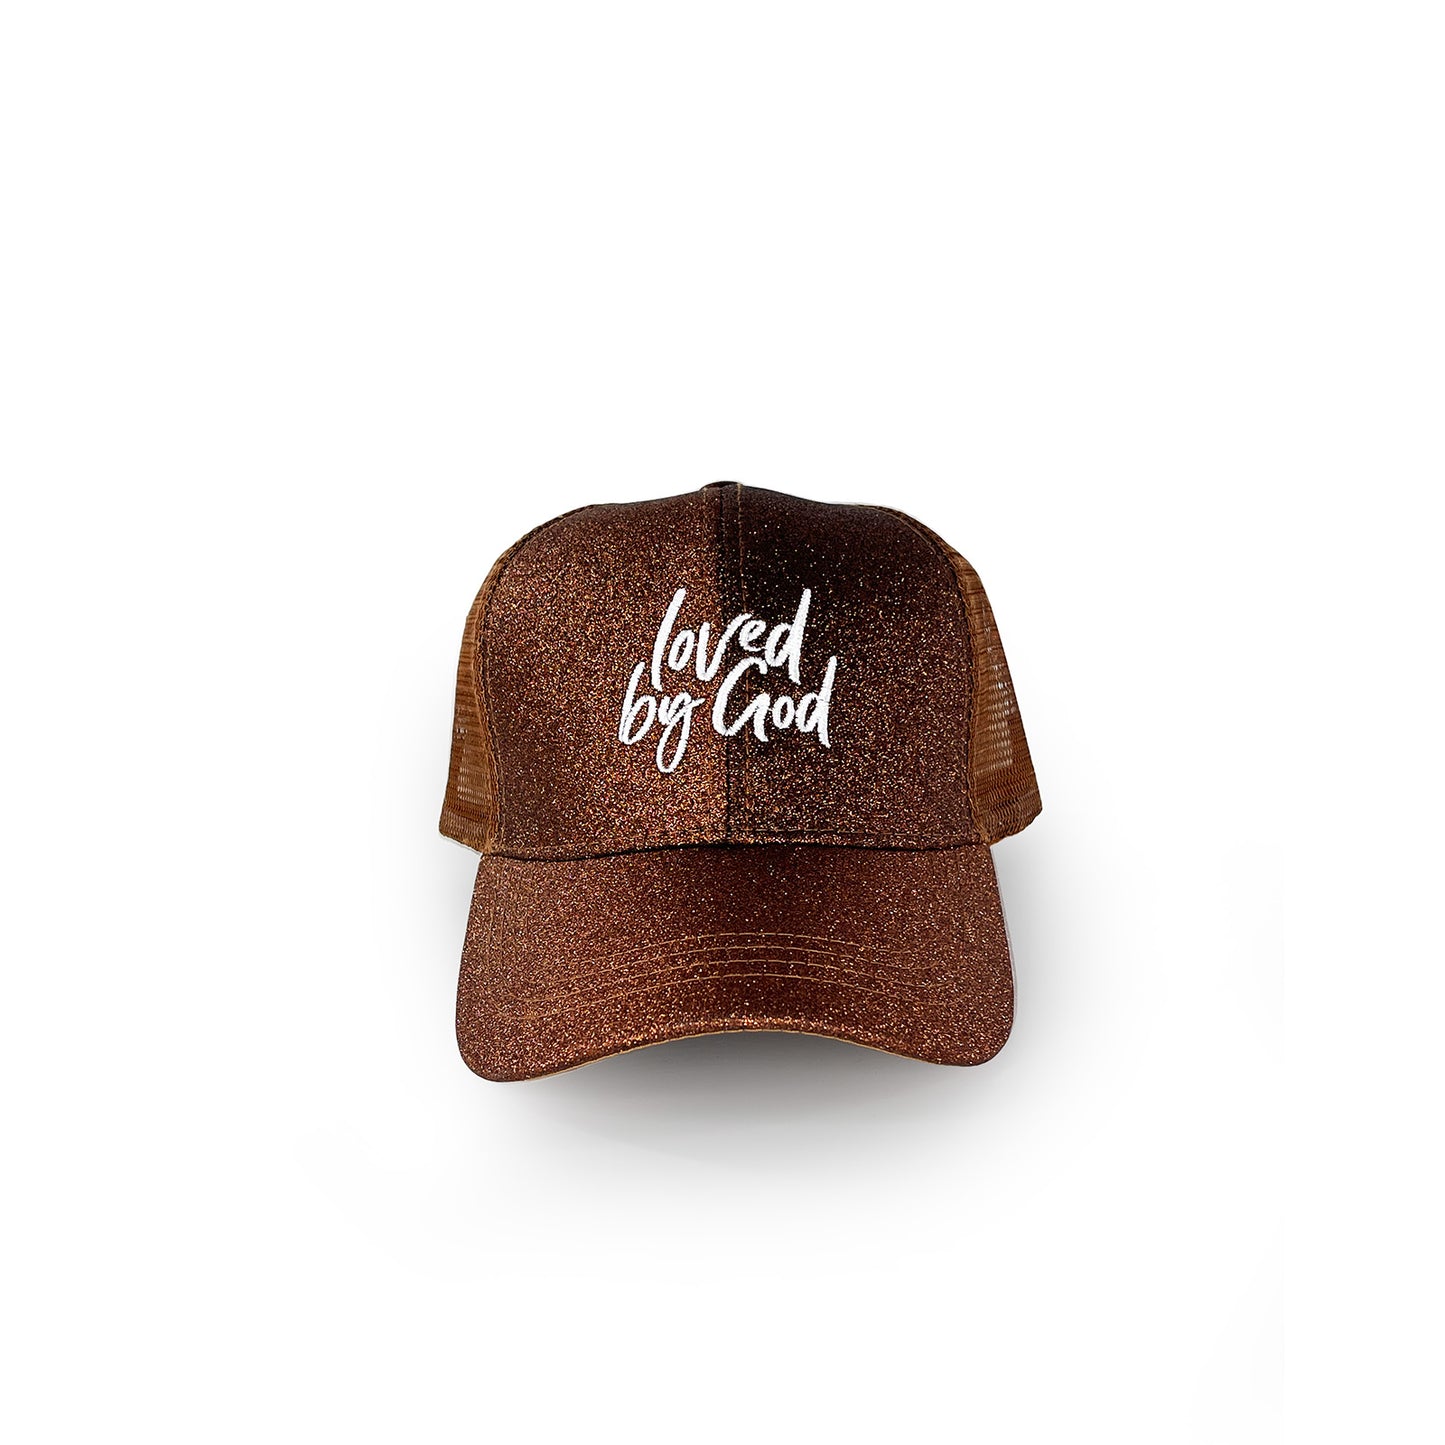 Loved by God Glitter Trucker Hats